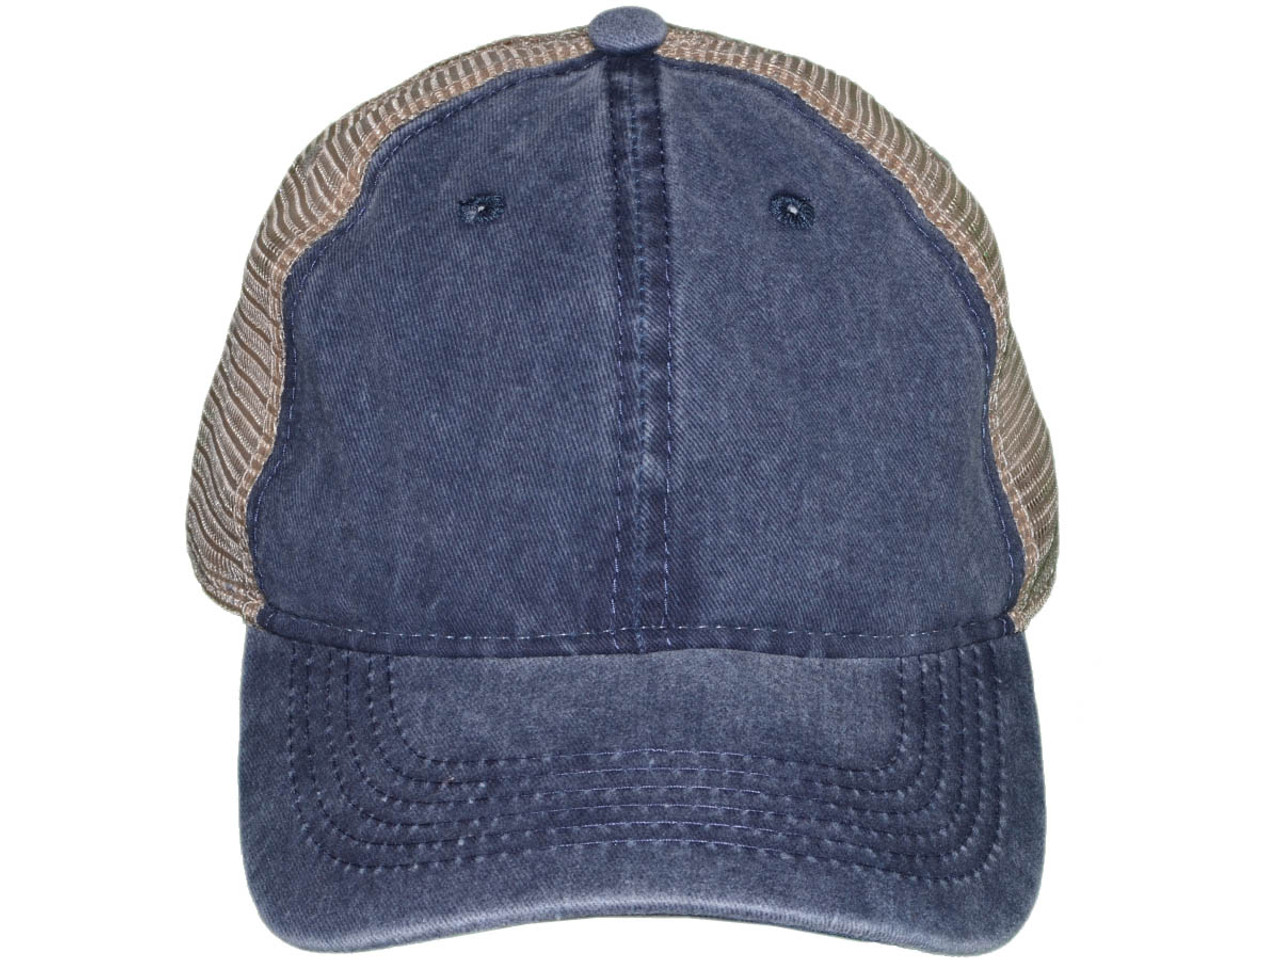 Wholesale Mesh Trucker Hats - BK Caps Low Profile Unstructured Pigment ...